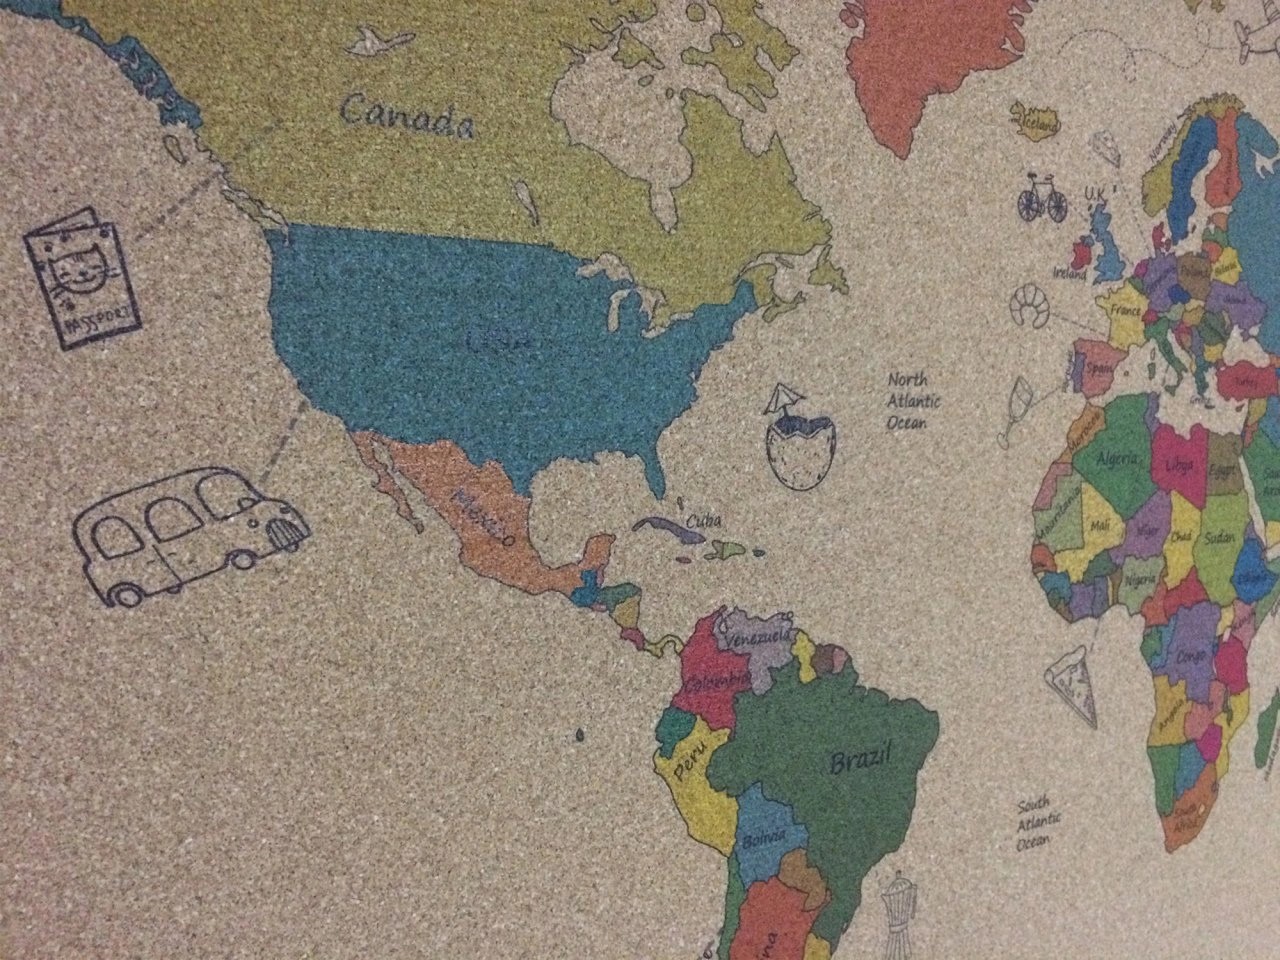 111 - Cork World Map - Colourful